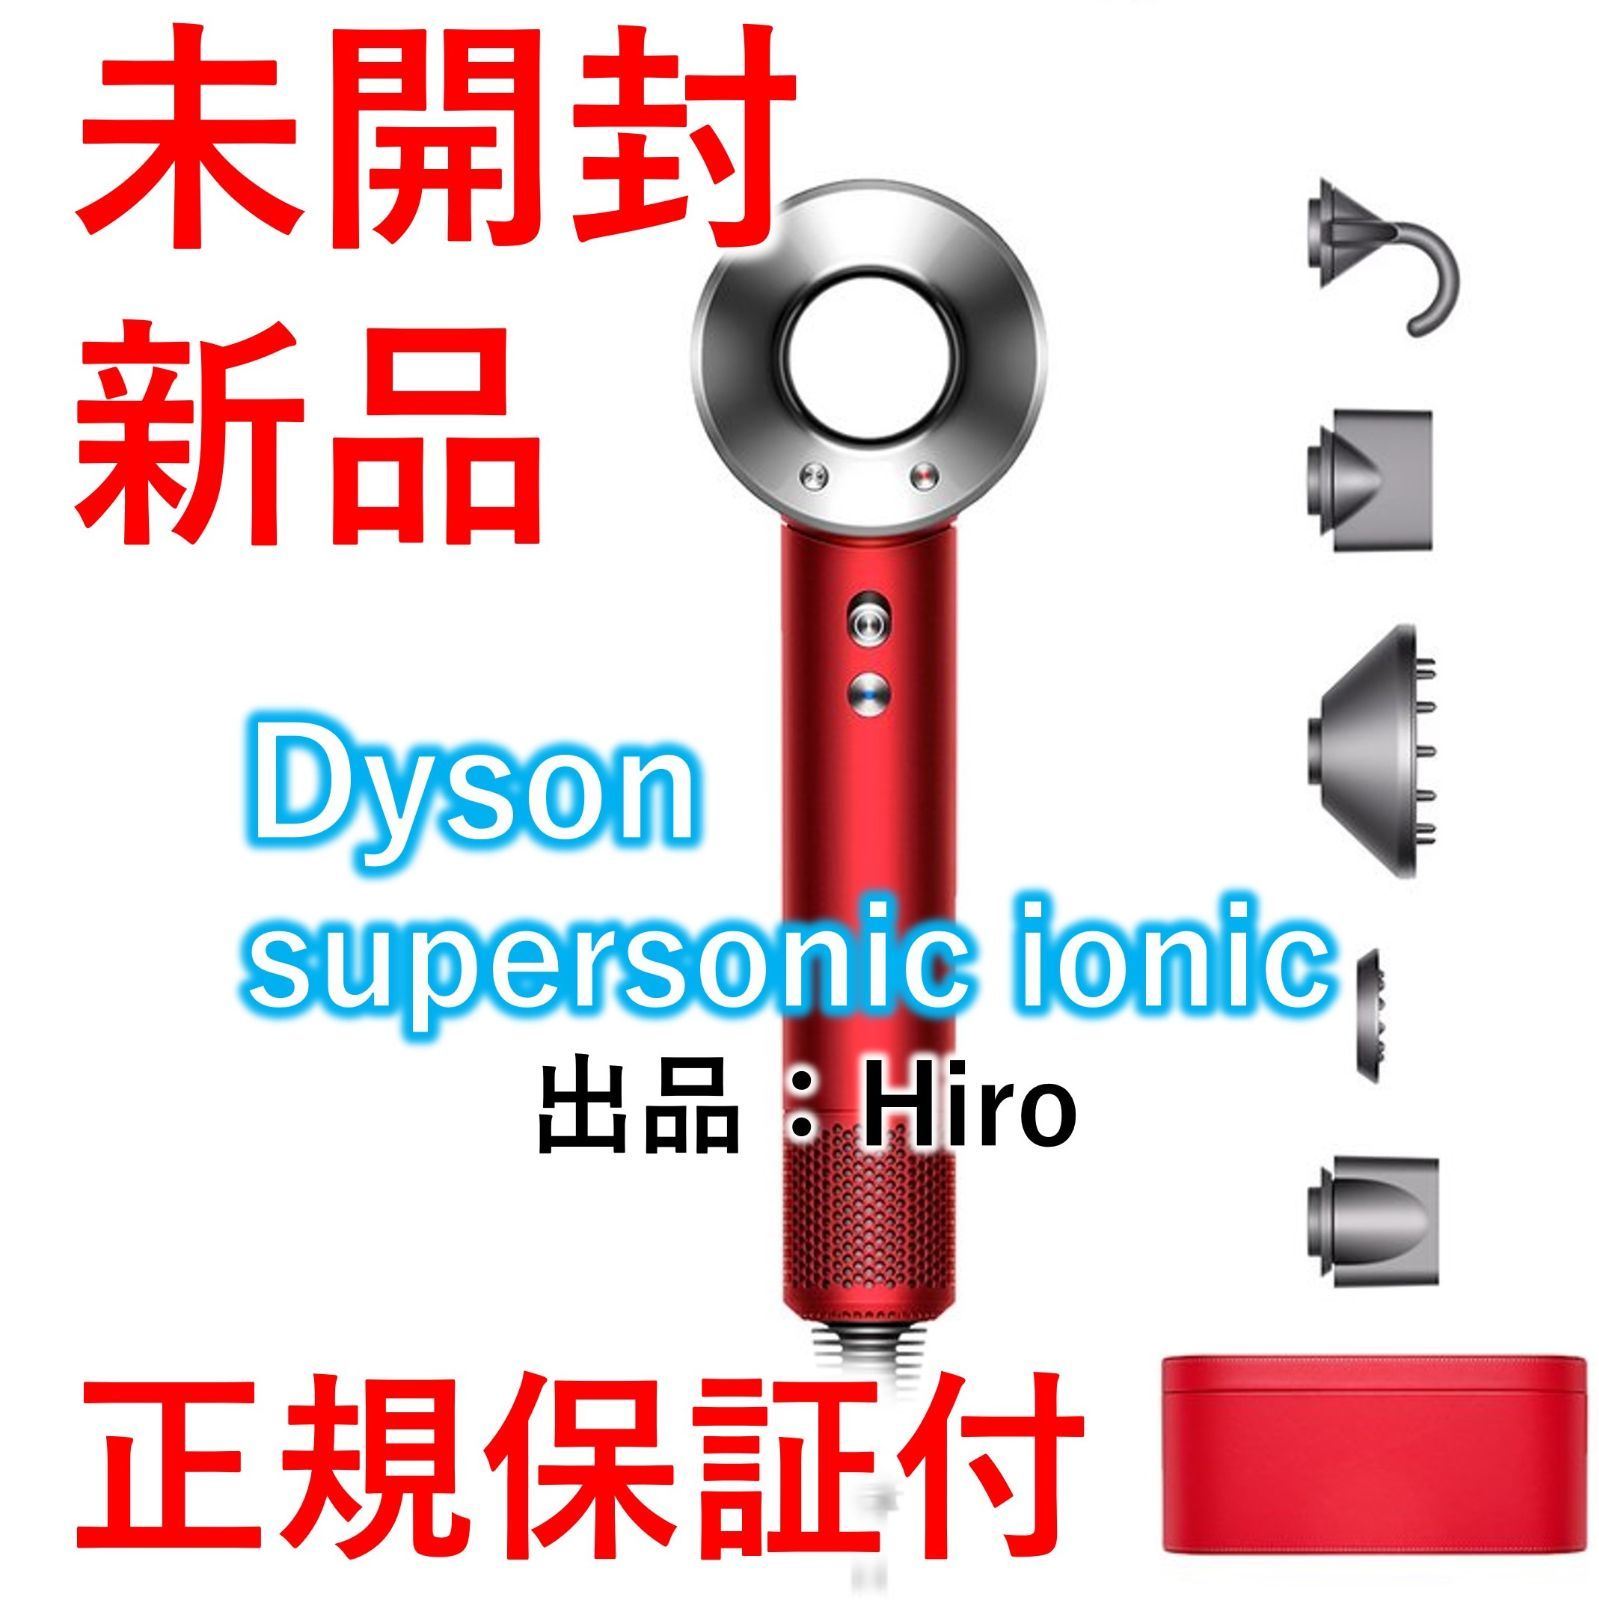 新品未開封 Dyson Supersonic Ionic ドライヤー ダイソン